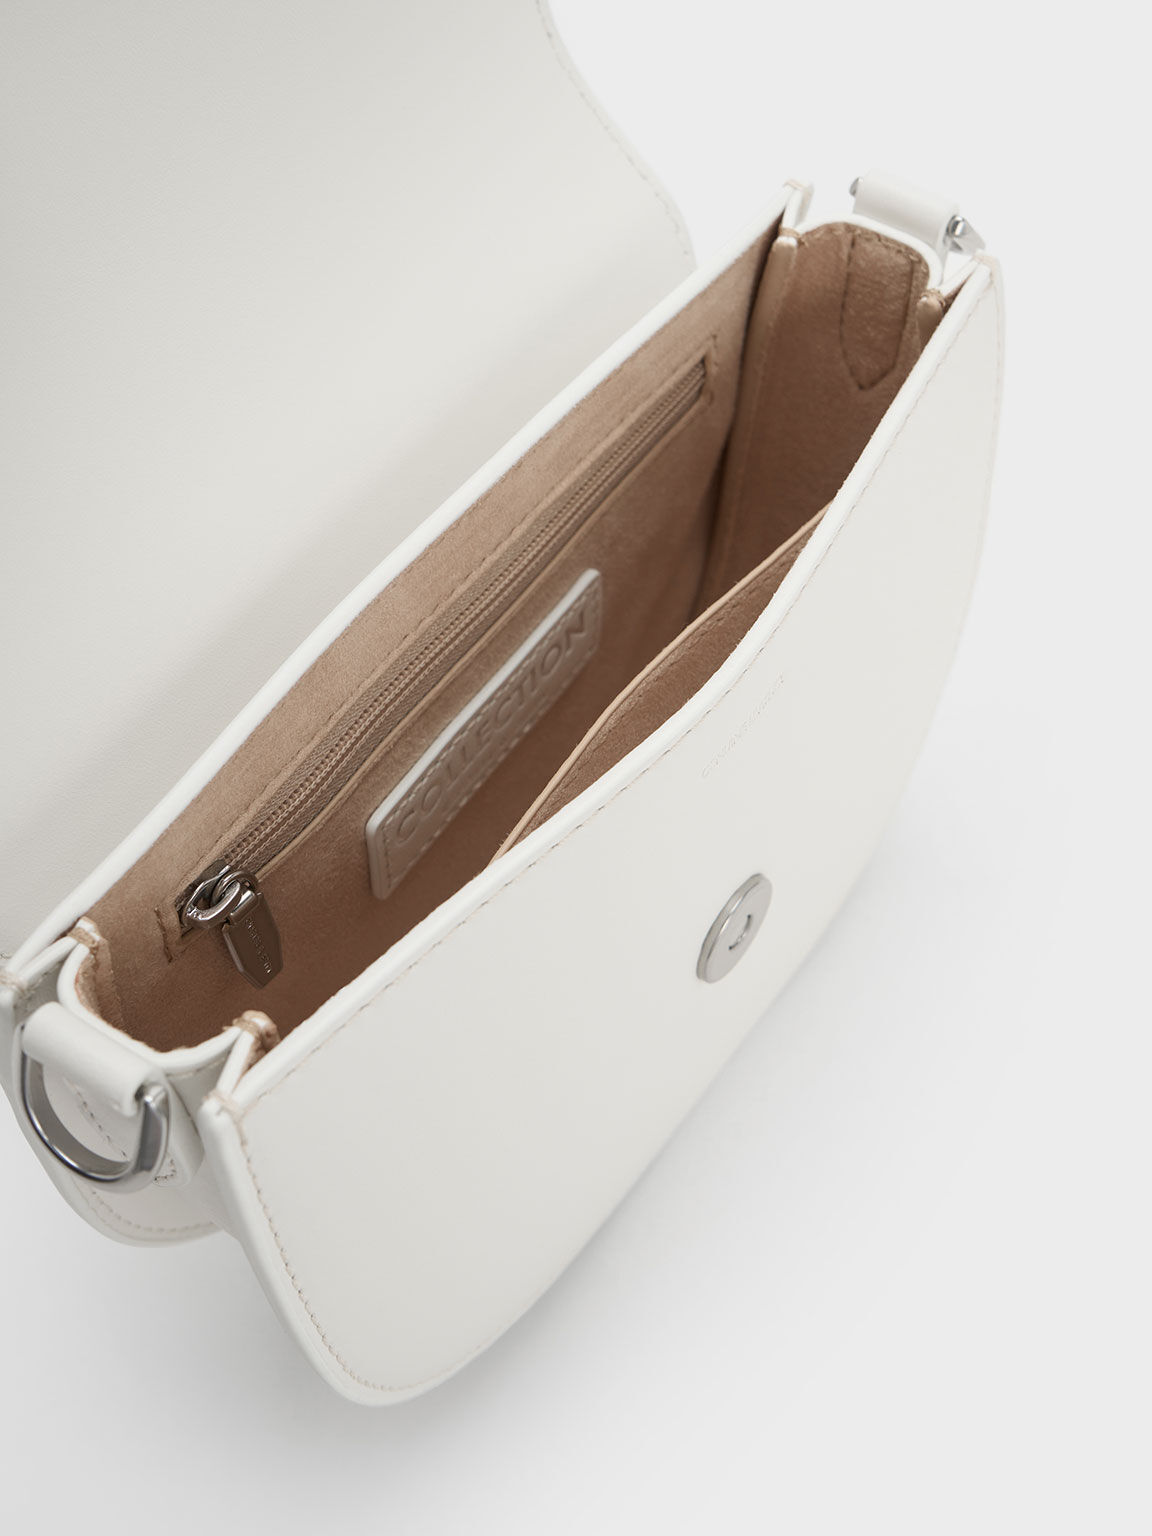 Mini Gabine Leather Saddle Bag - White